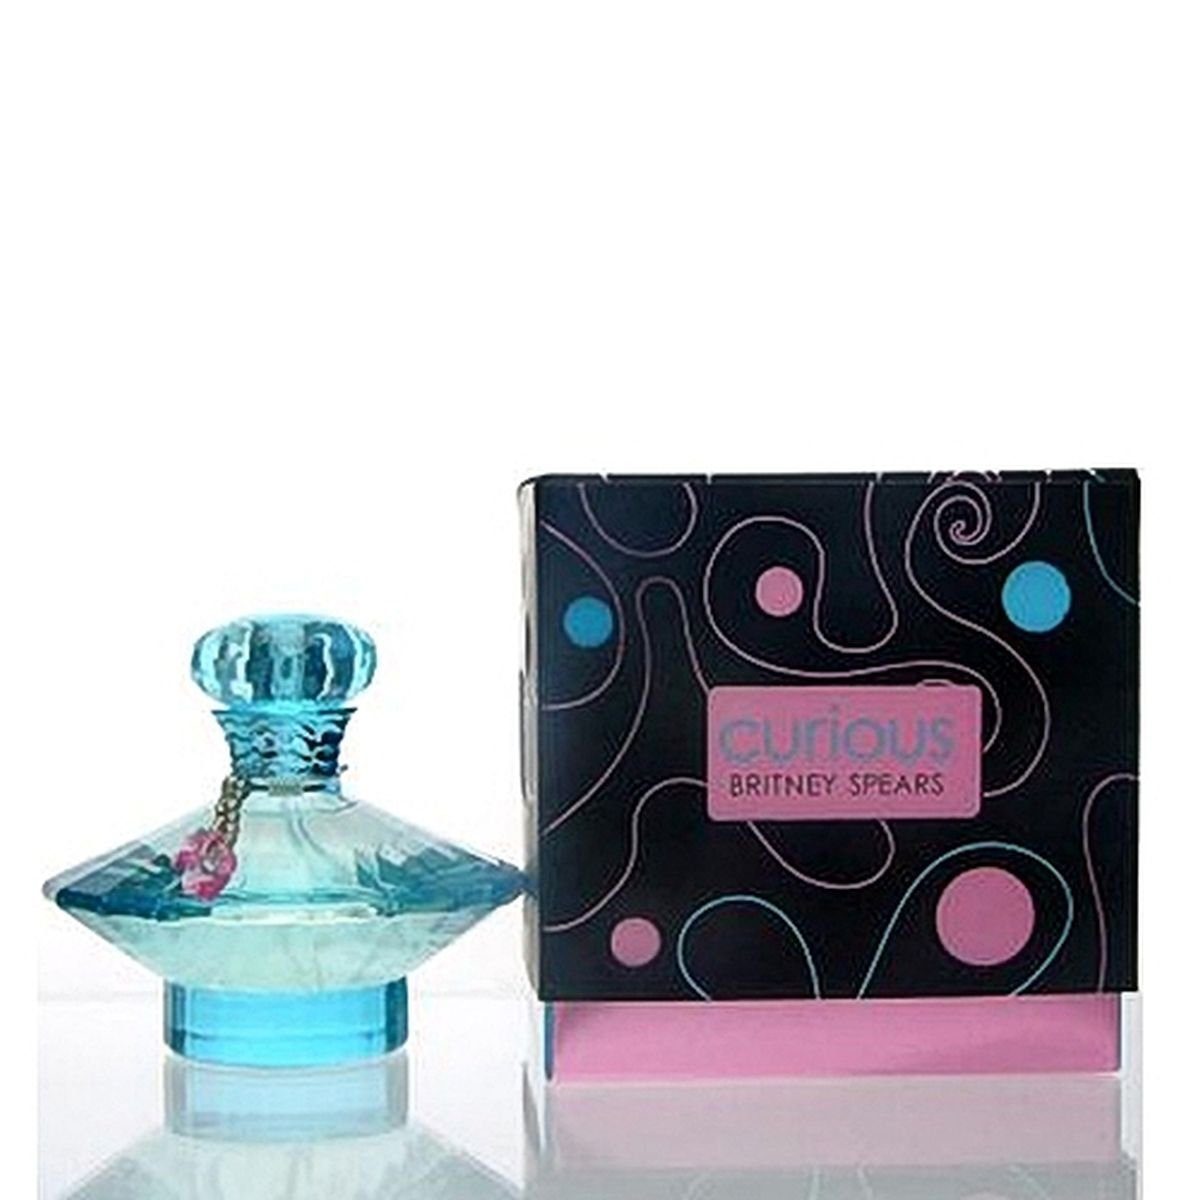 Spears Britney Spears Parfum Parfum de Curious de ml Britney 100 Eau Eau